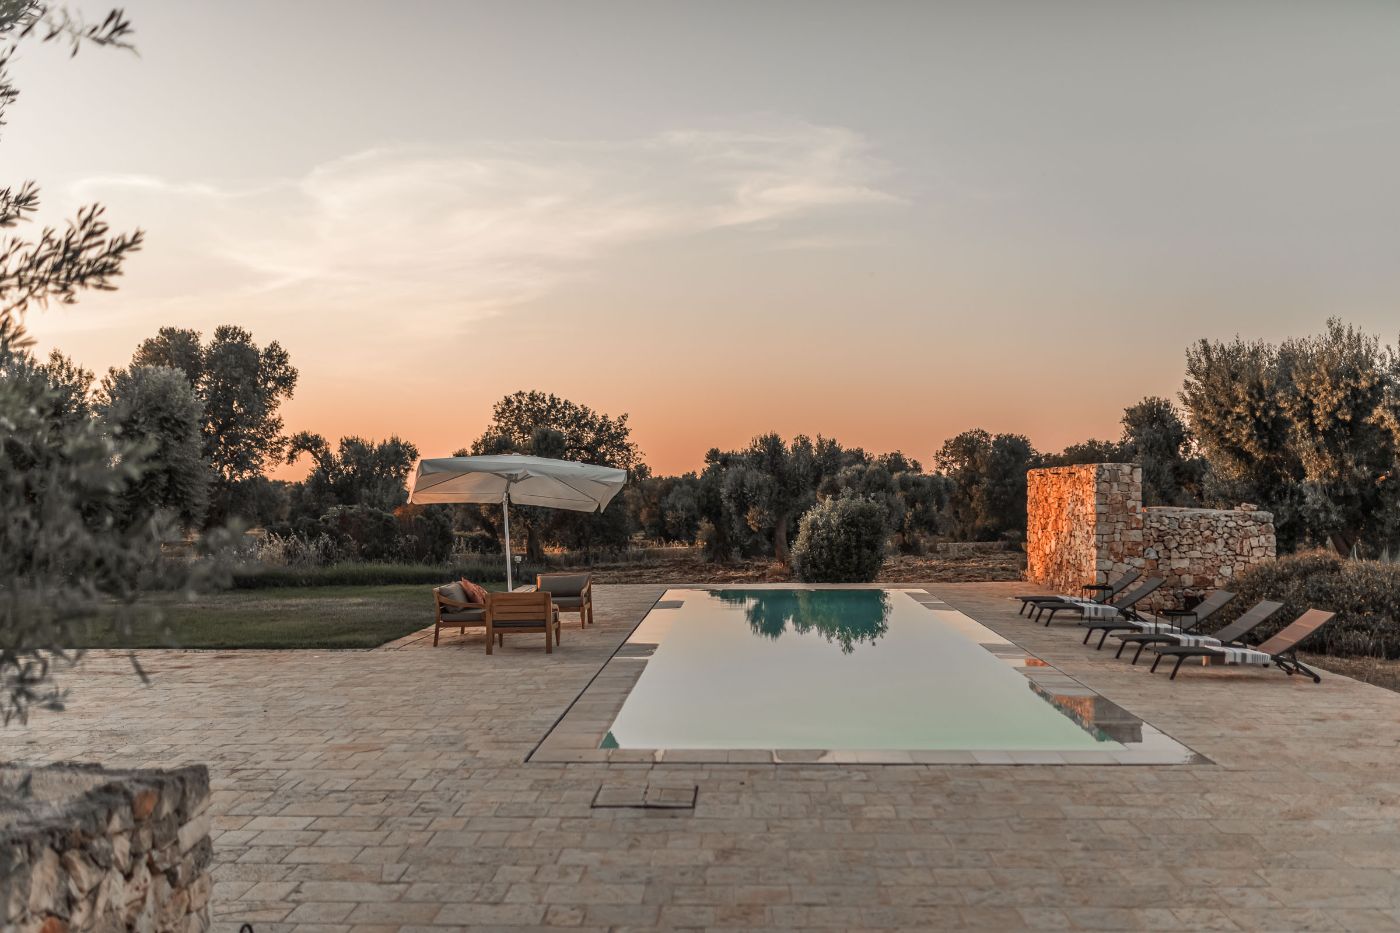 The pool at sunset, Villa Ambra.